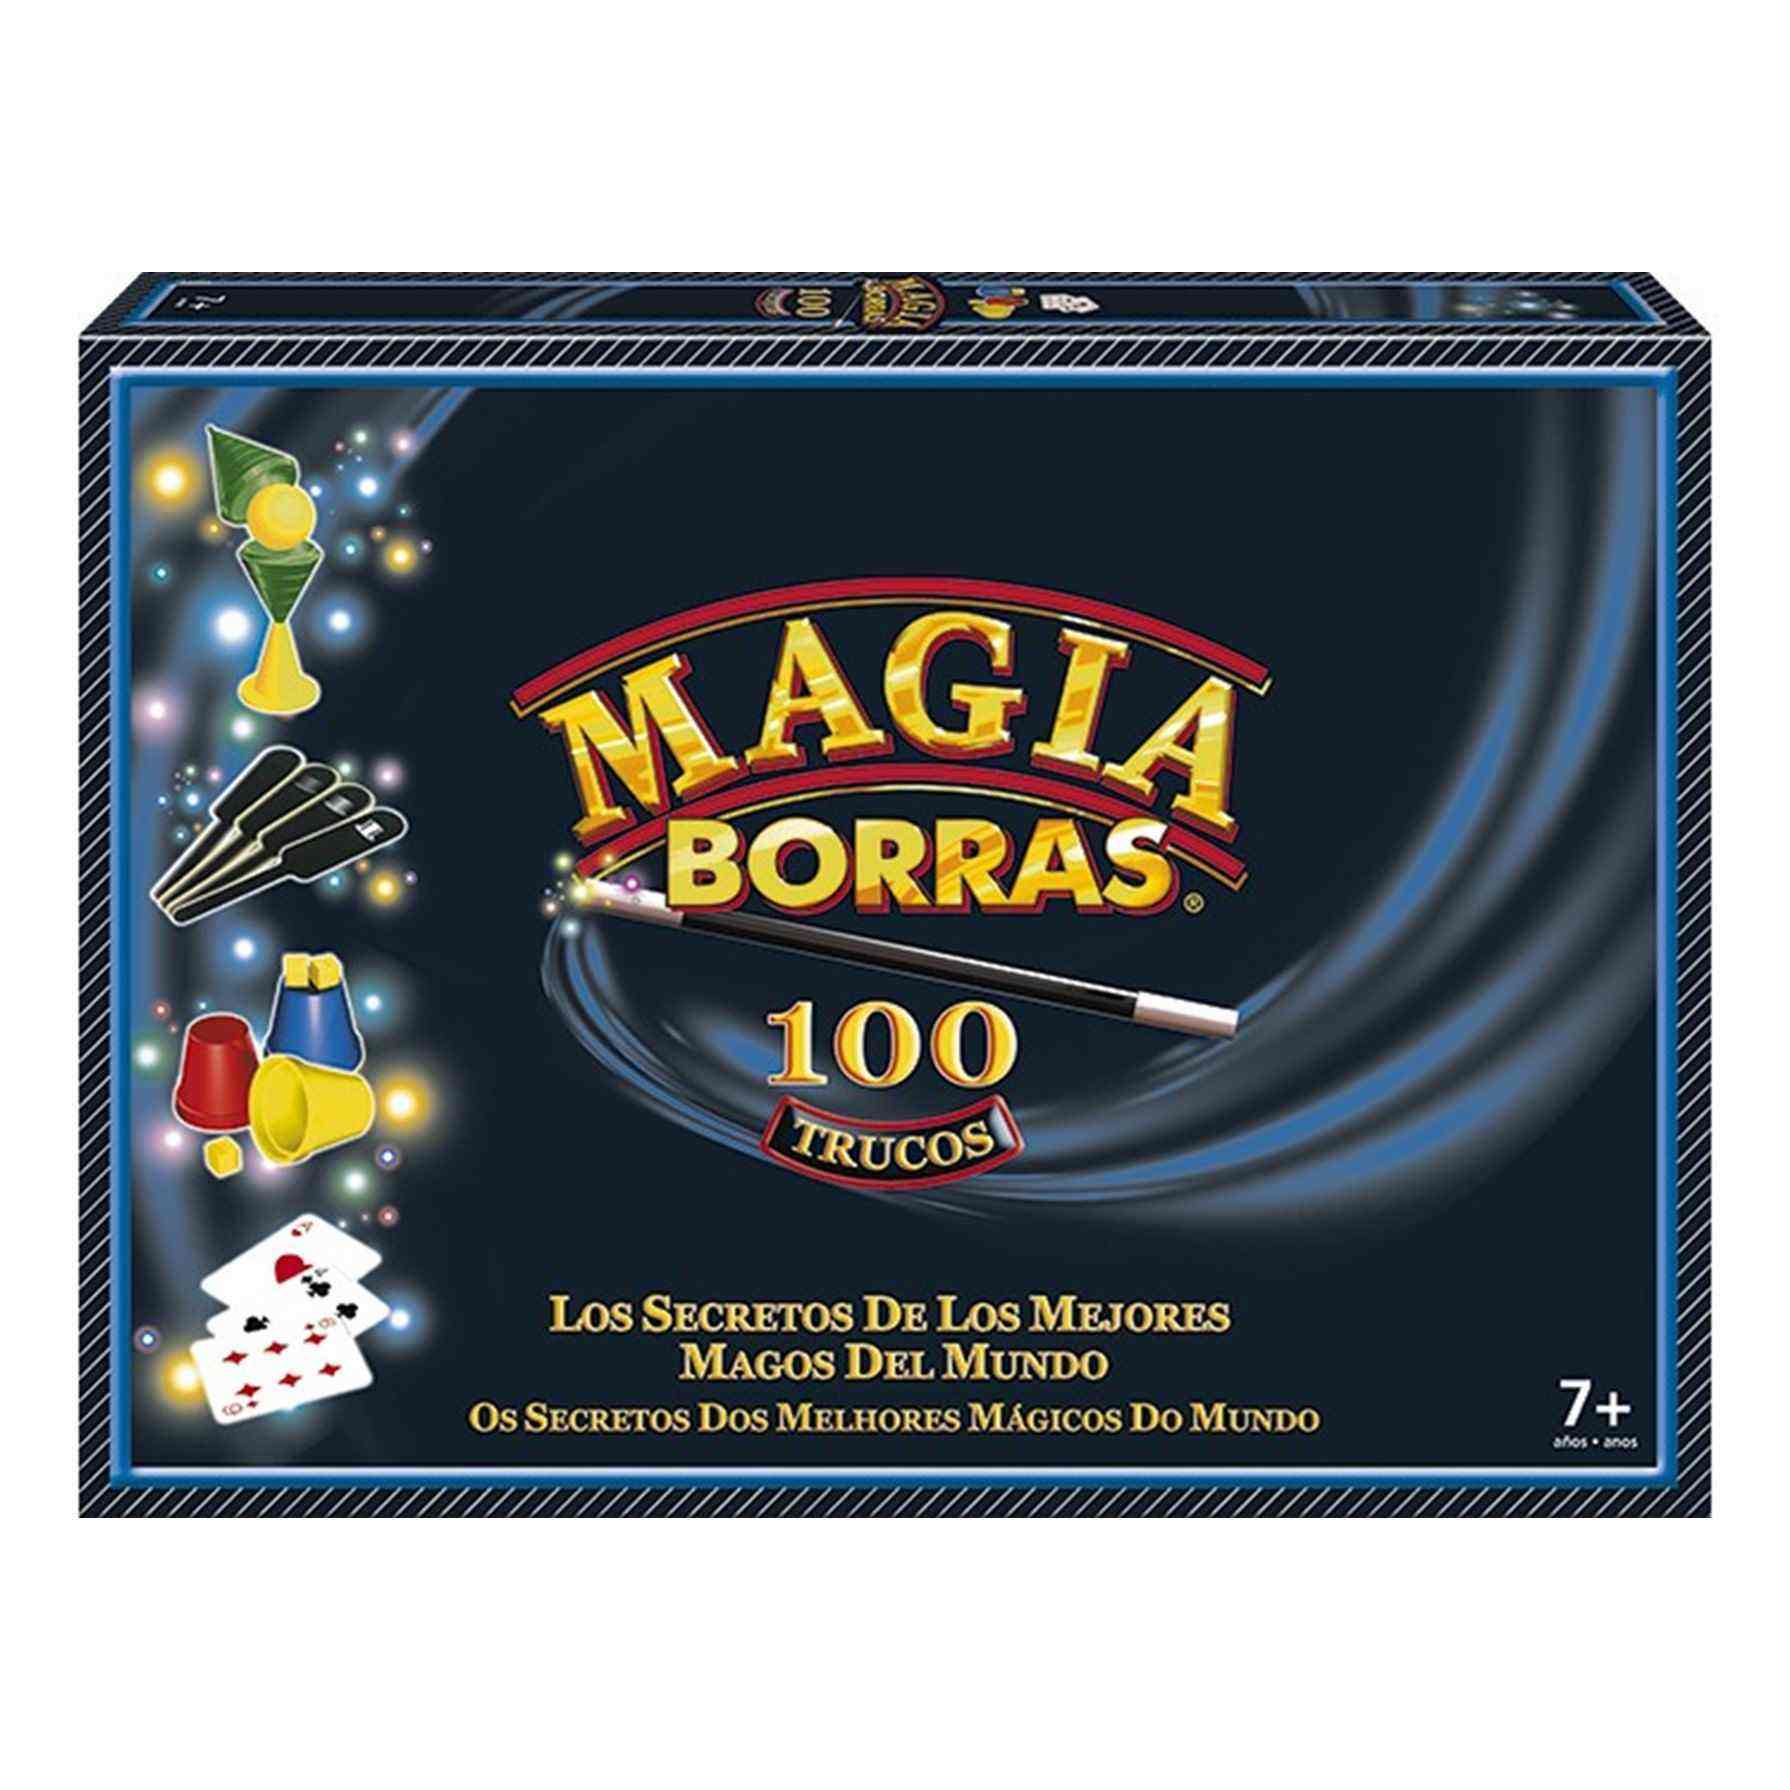 Magia Borras® Clásica 100 Trucos